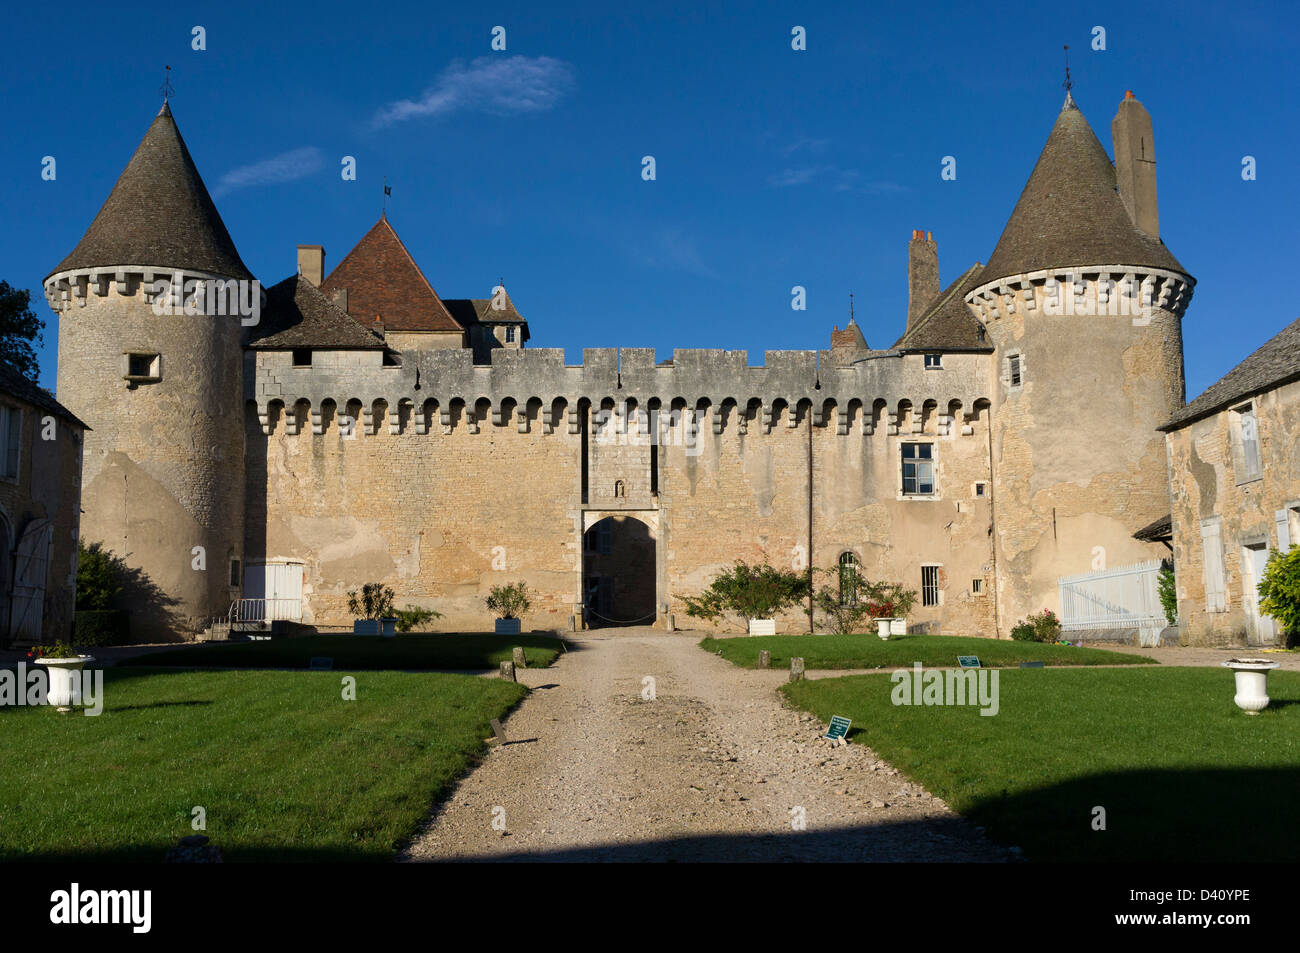 Chateau de Rully, ein Weinberg und Festung berühmt für seine Weine Chardonnay, Burgund / Bourgogne, Frankreich Stockfoto